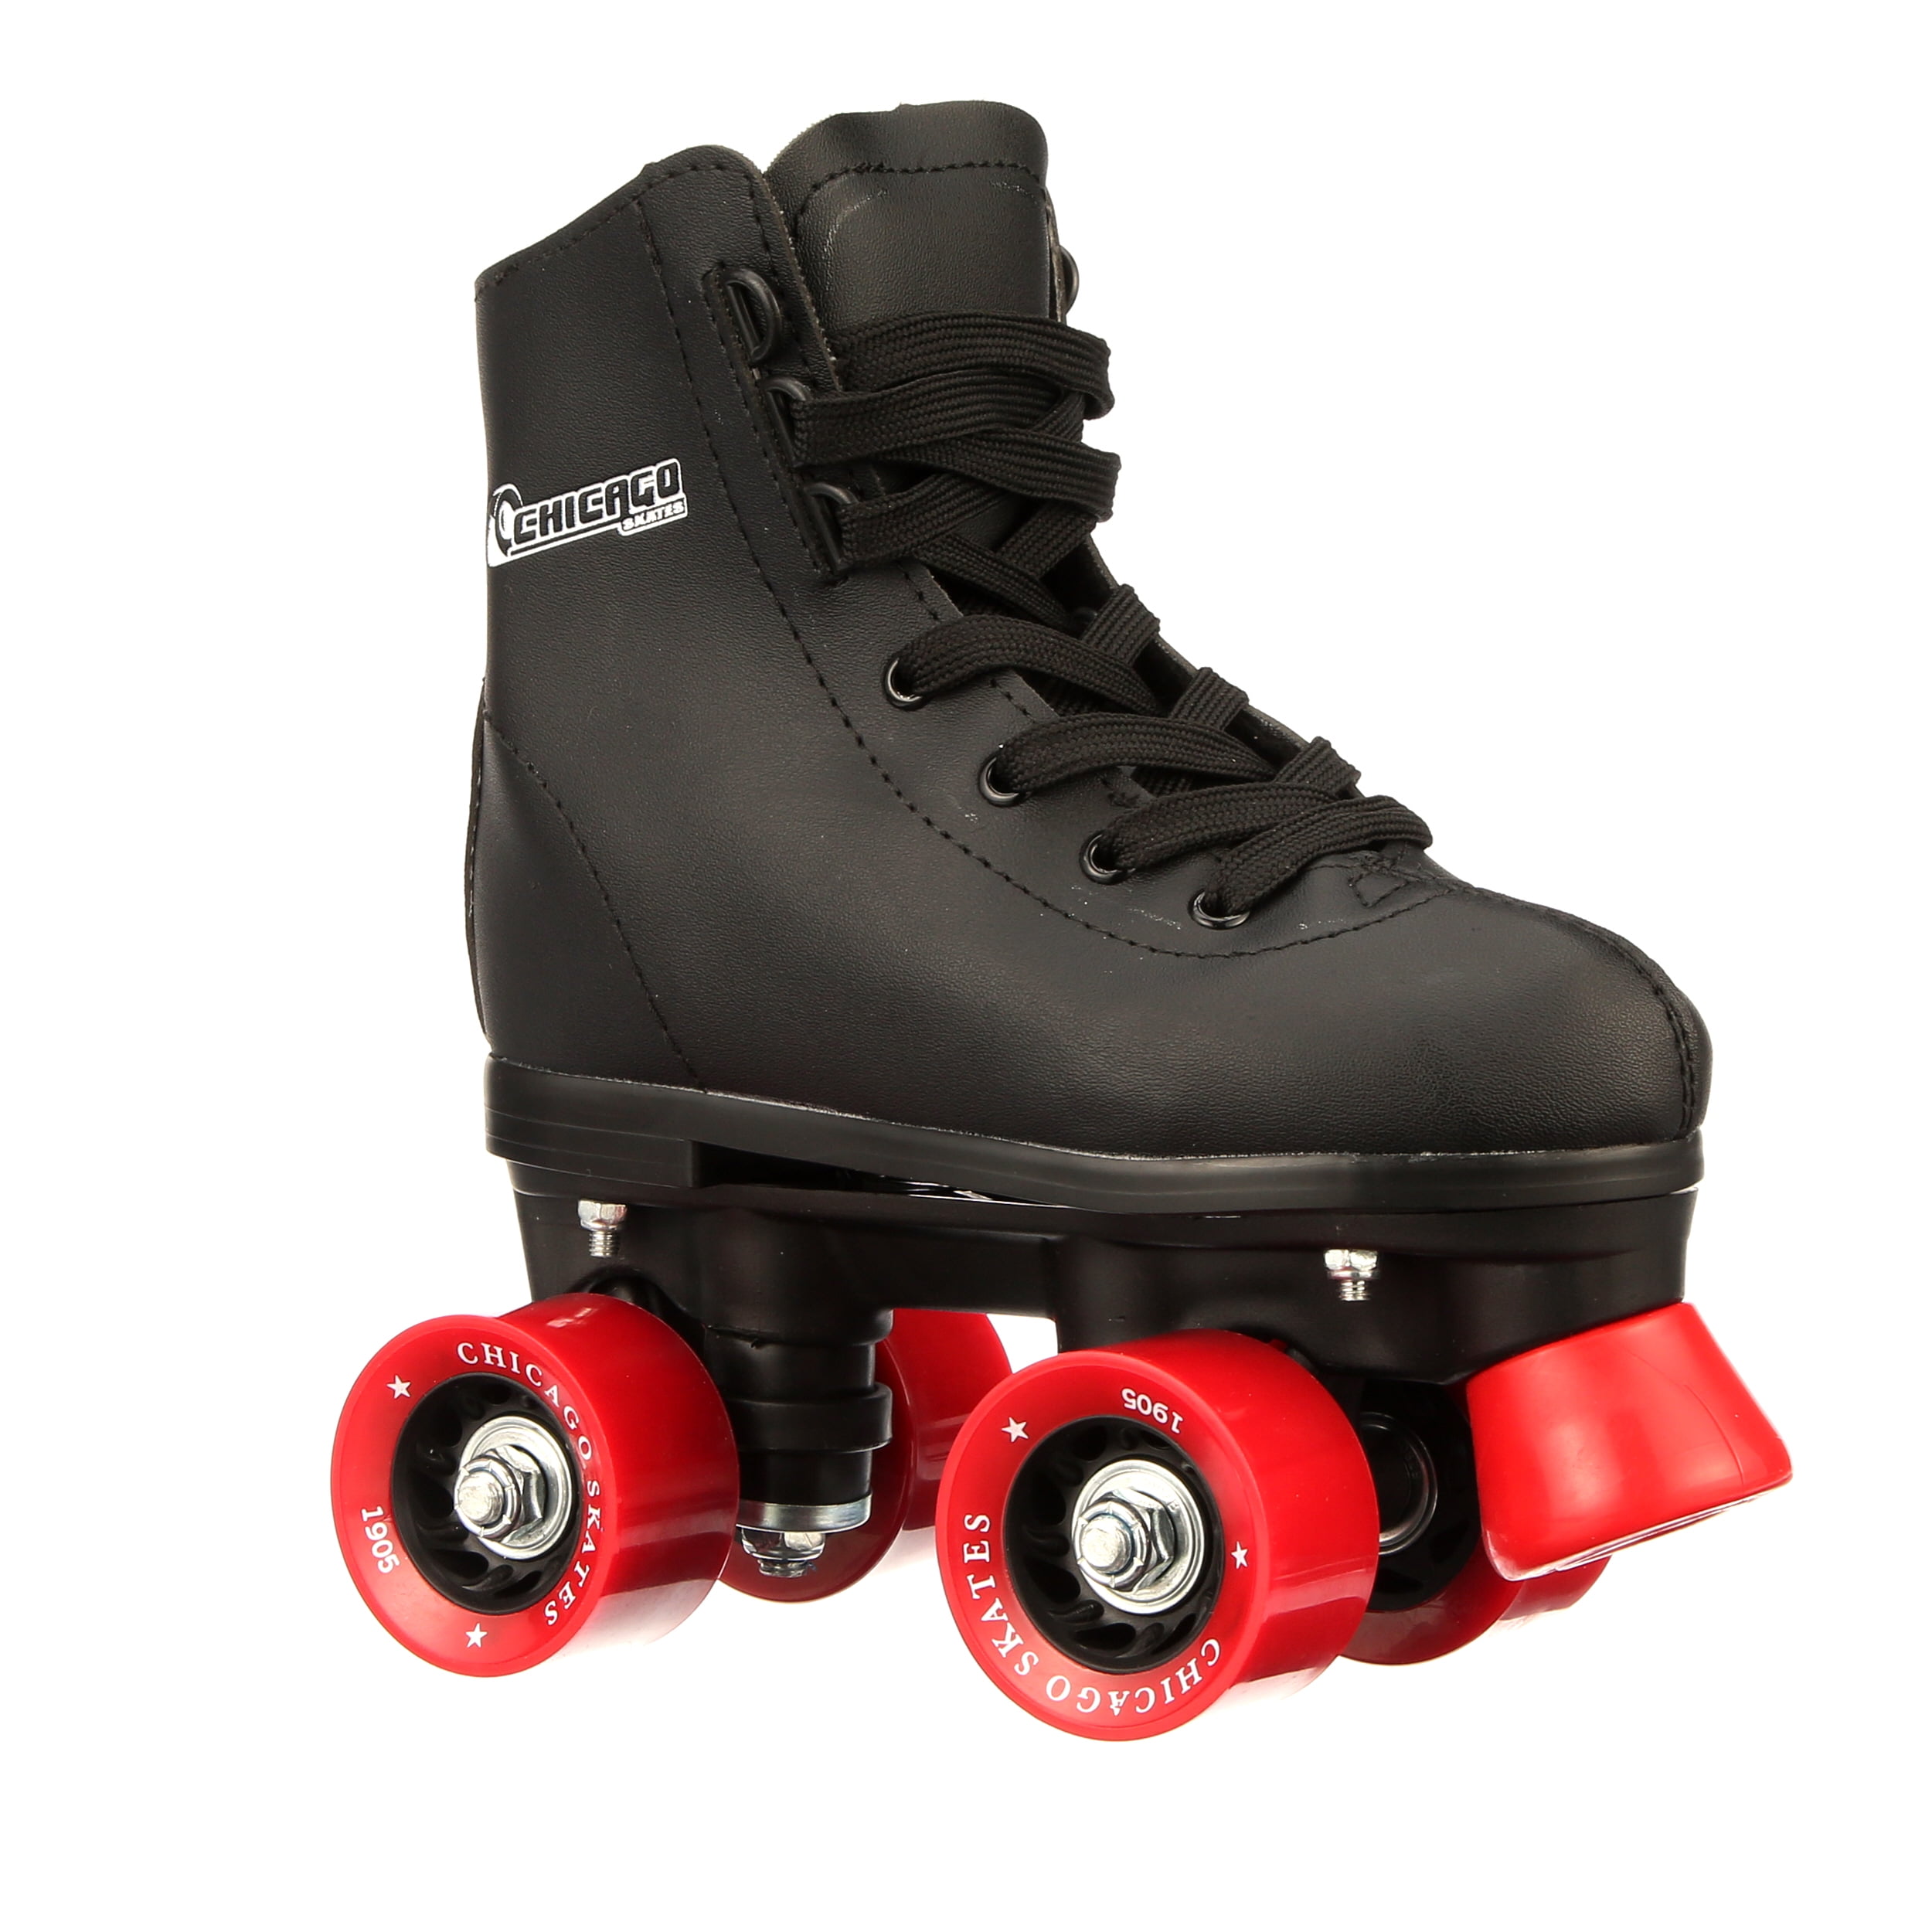 Chicago Men's Rink Roller Skates Size 7 Black for sale online 